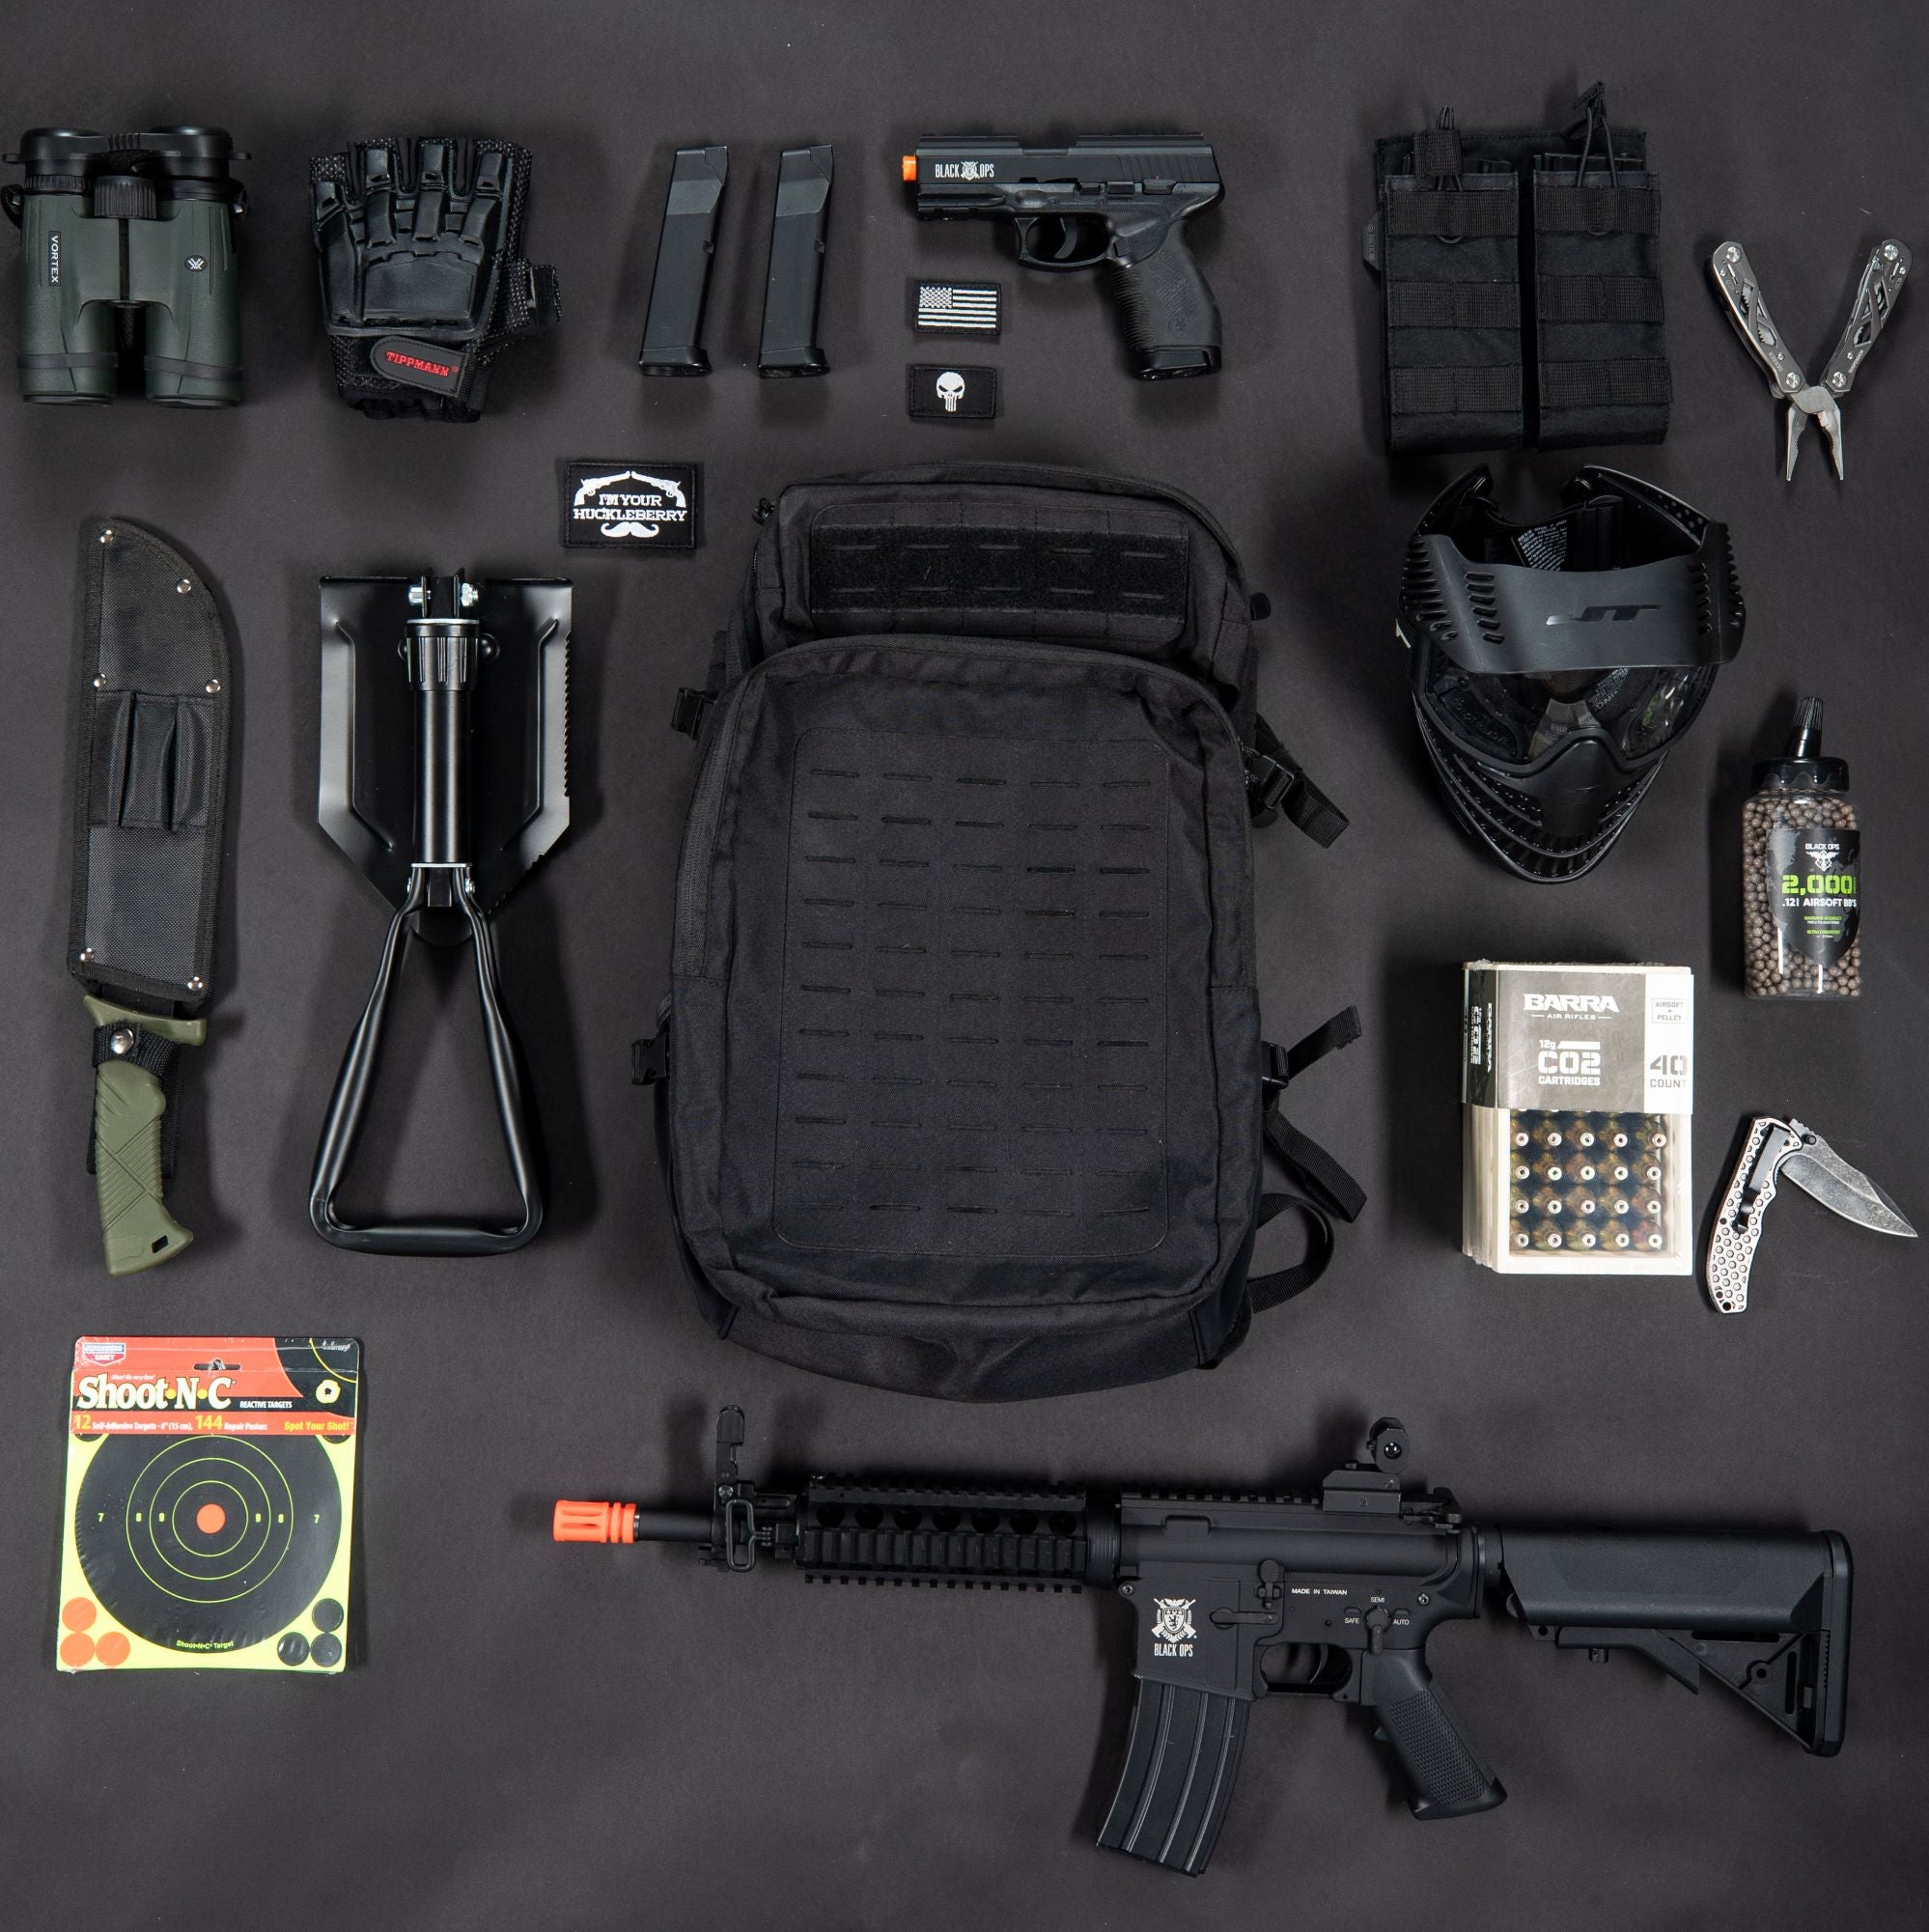 backpack-black-ops-37.html